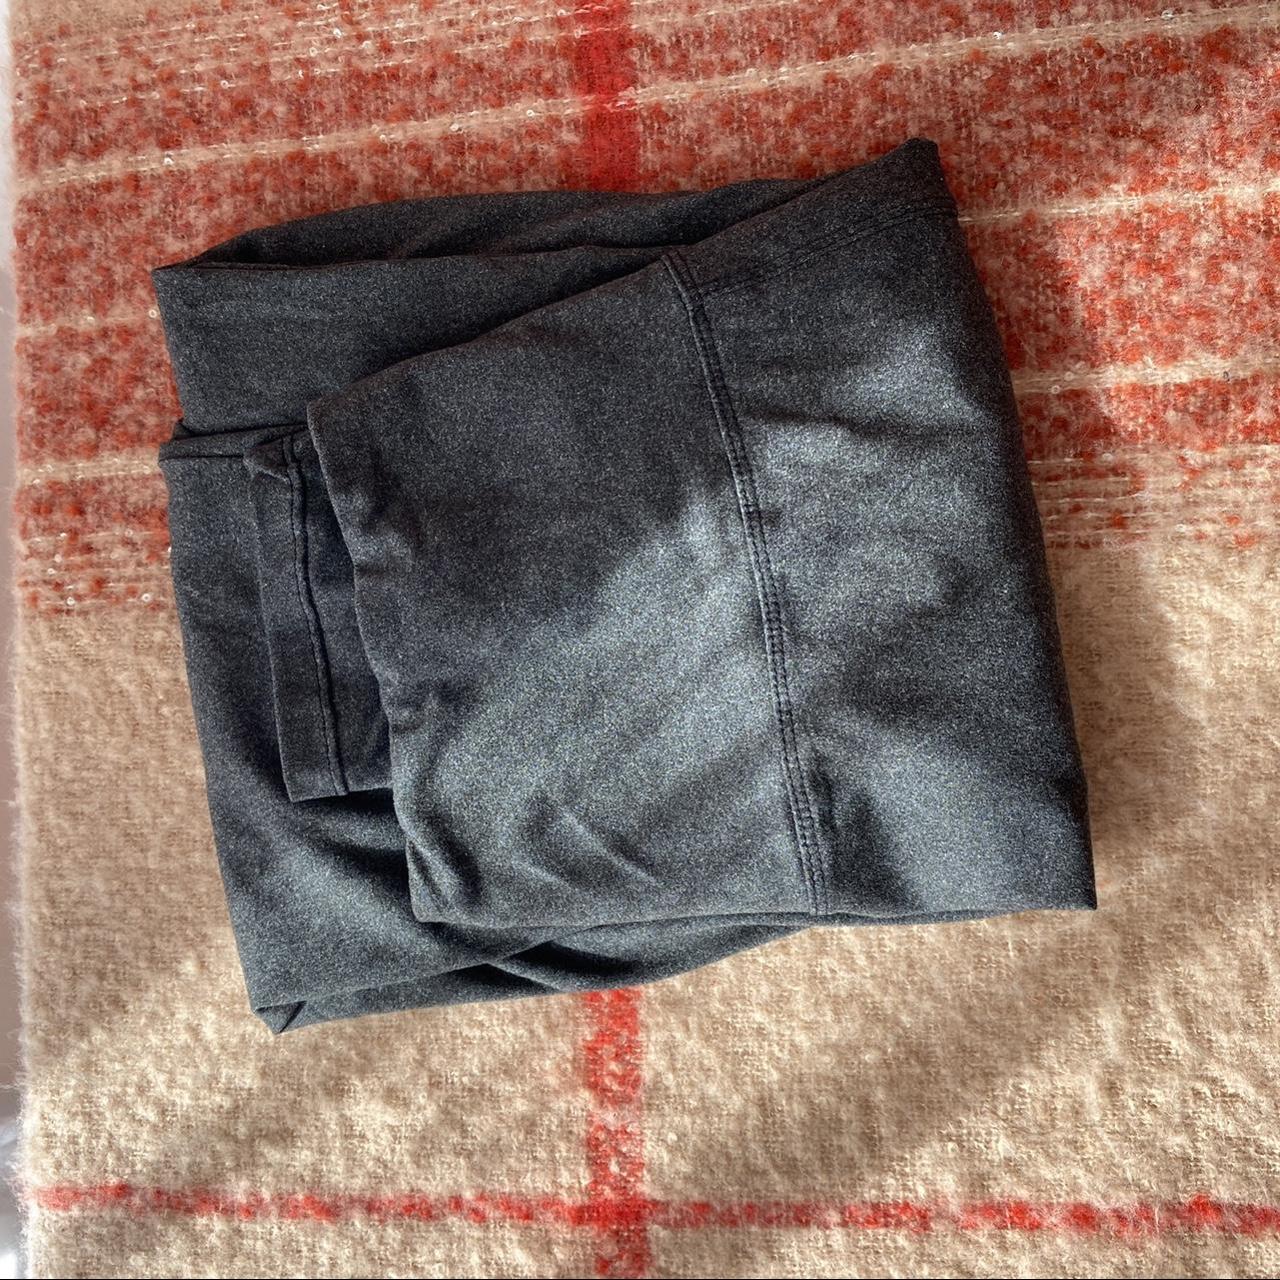 Time And Tru Women's Linen-Blend Pants Size XL - Depop